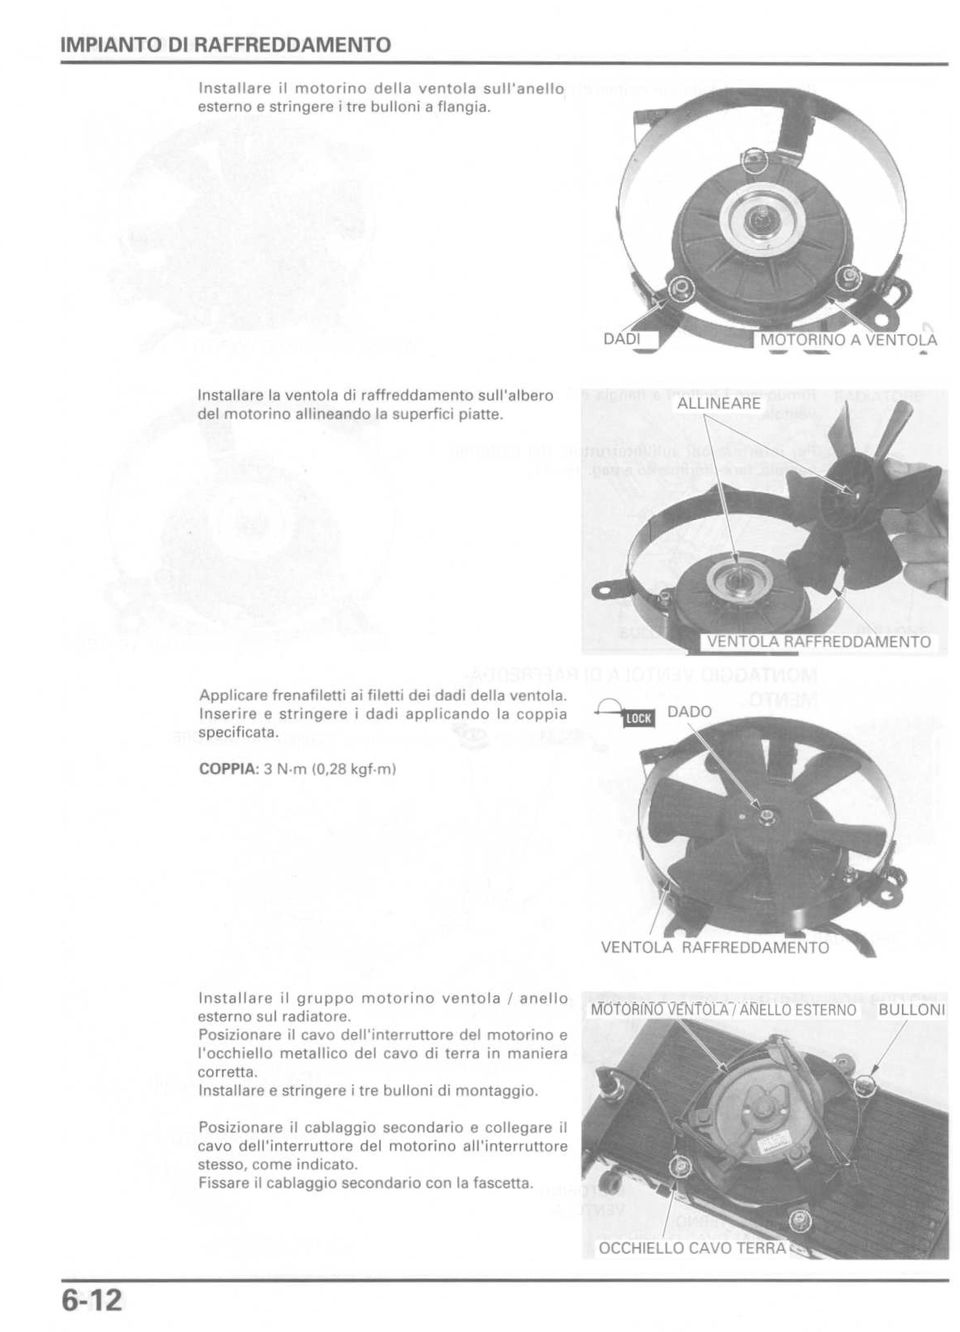 m) Installare il gruppo motorino ventola / anello esterno sul radiatore. Posizionare il cavo dell'interruttore del motorino e l'occhiello metallico del cavo di terra in maniera corretta.